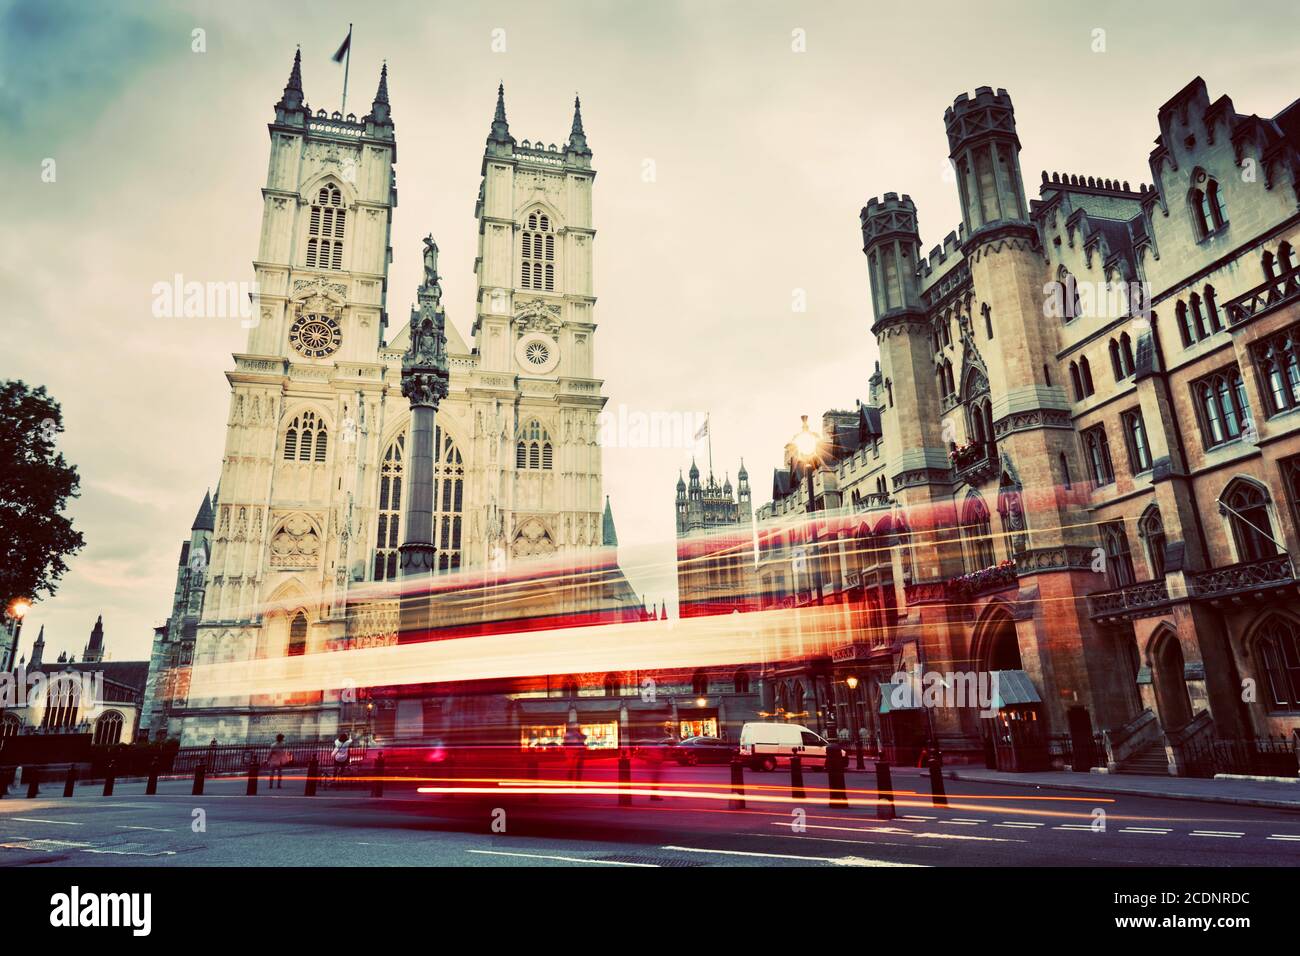 Westminster Abbey église, bus rouge en mouvement à Londres Royaume-Uni. Vintage Banque D'Images